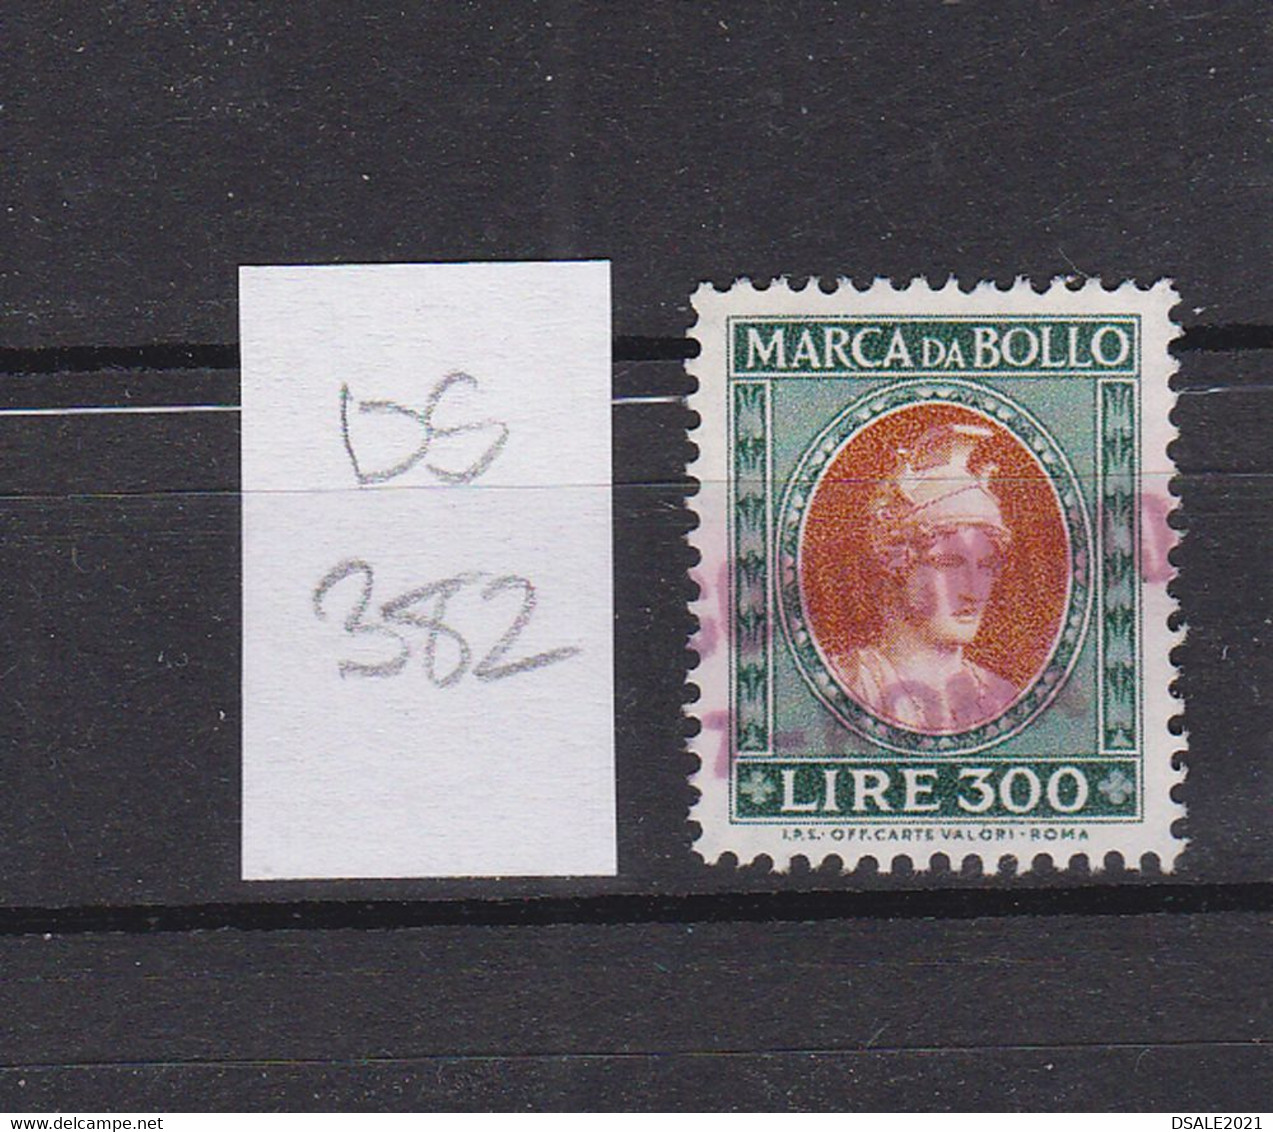 Italy Italia Italien Italie Topic Reveue Stamp Used Usato Timbre Fiscal, Lire 300 Marca Da Bollo (ds382) - Revenue Stamps